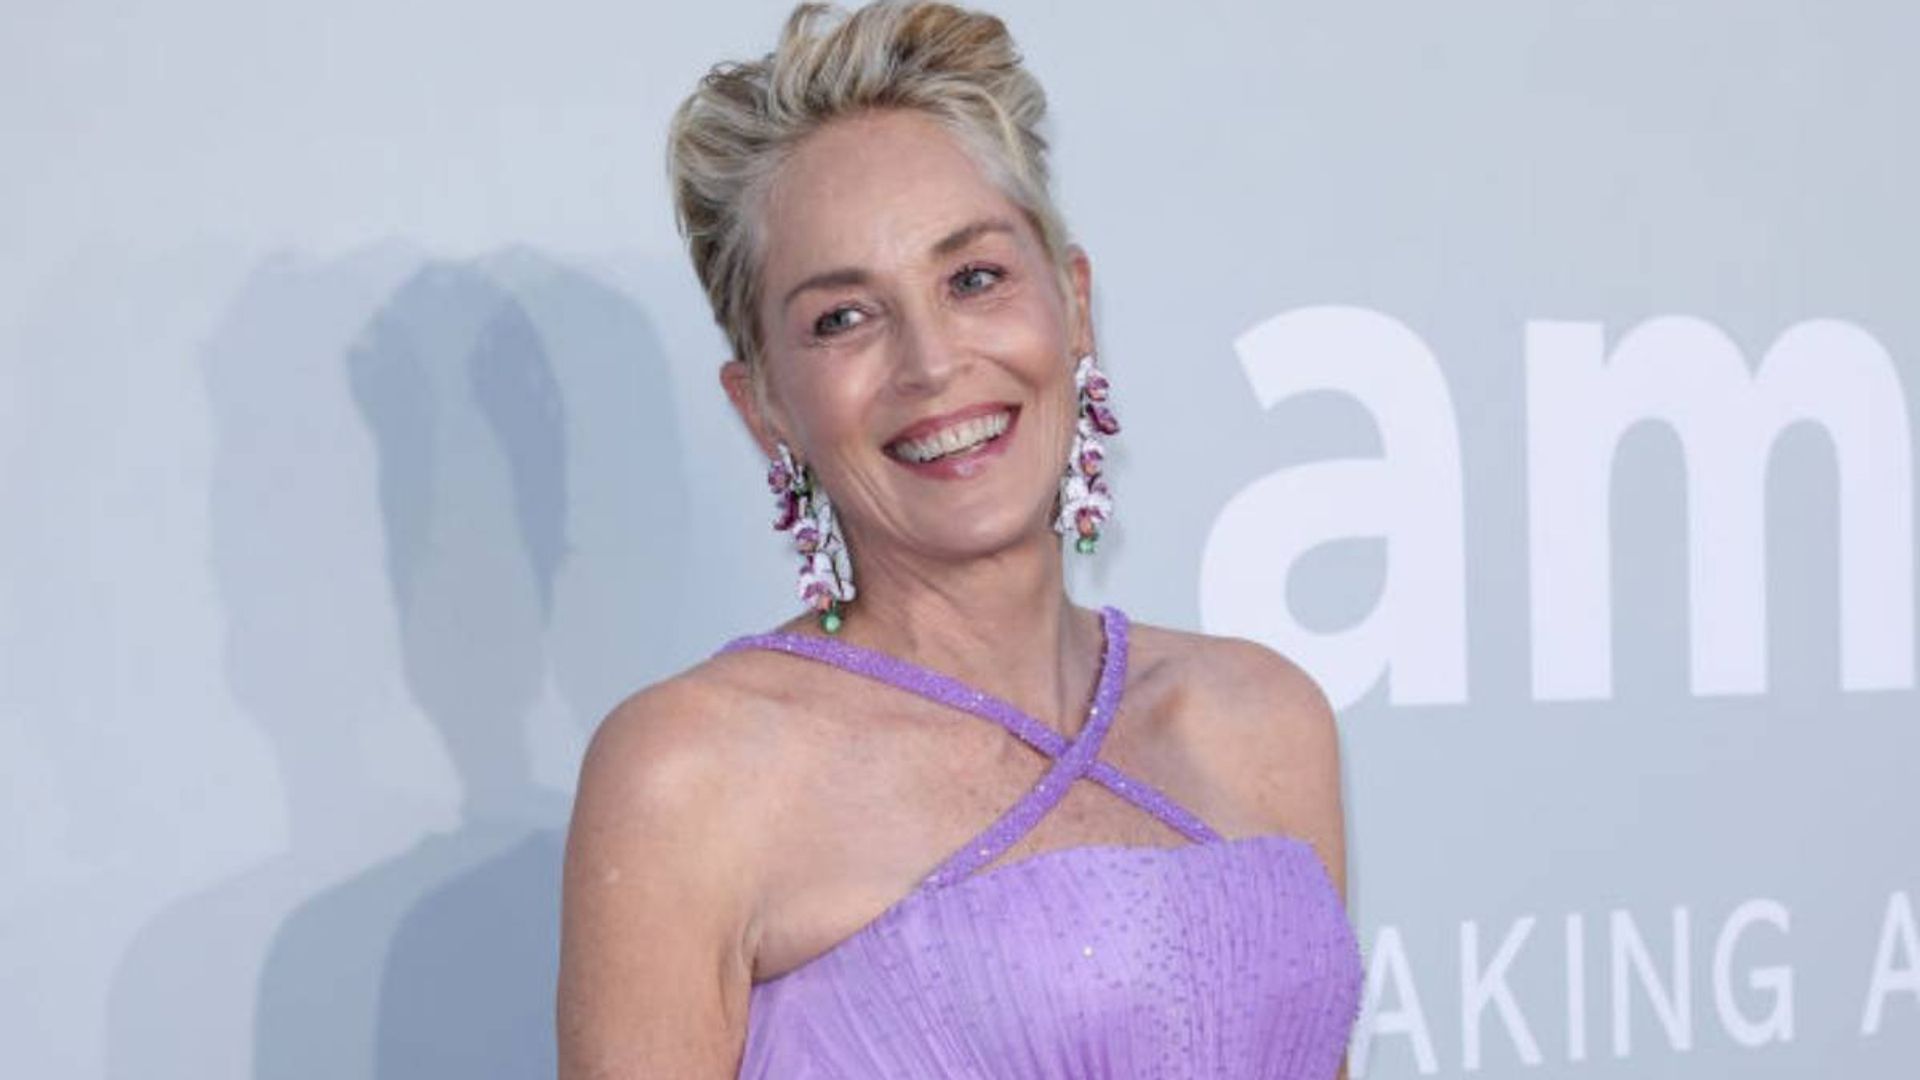 Sharon Stone looks lovely in purple dress